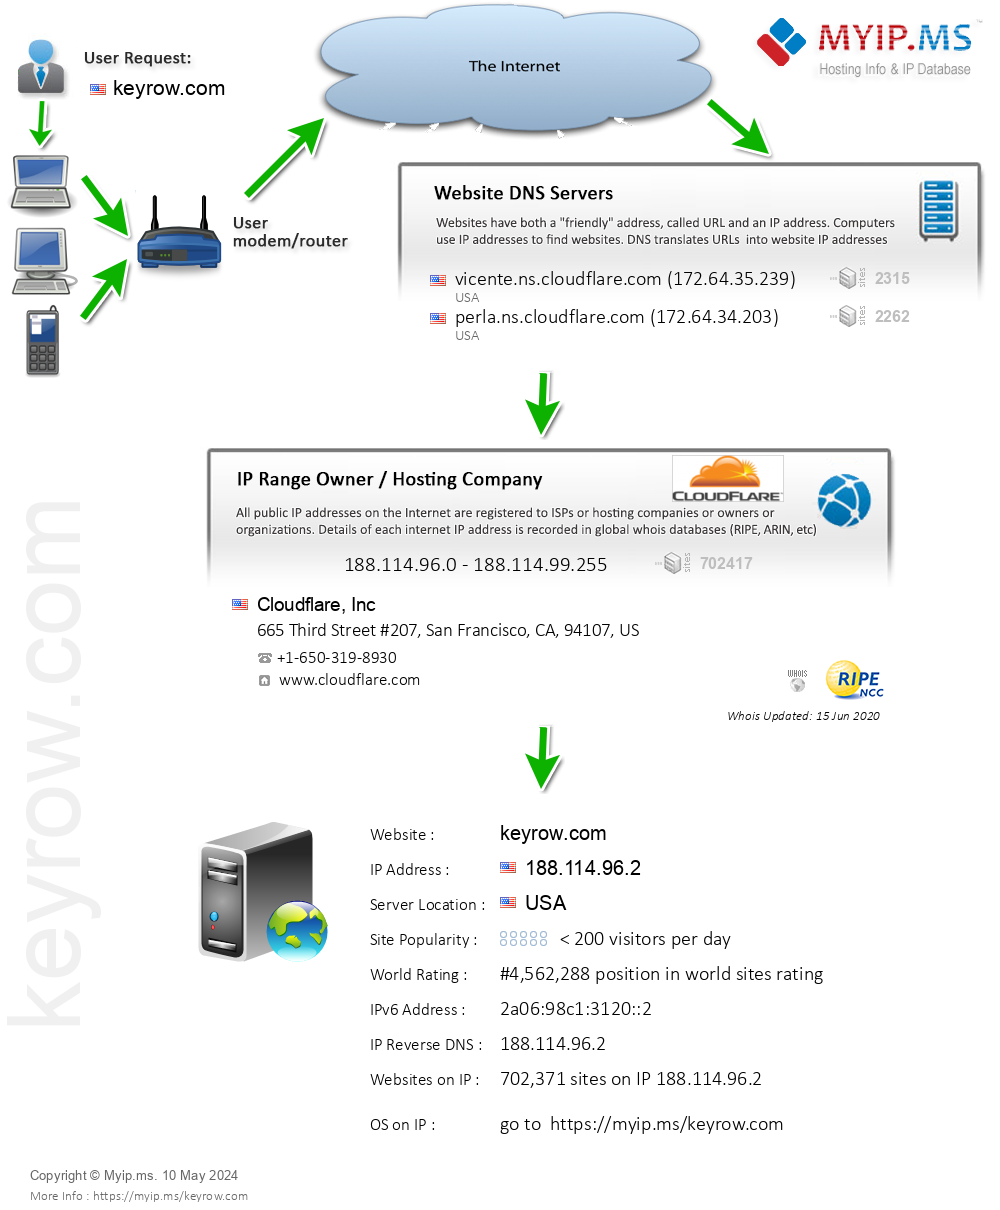 Keyrow.com - Website Hosting Visual IP Diagram